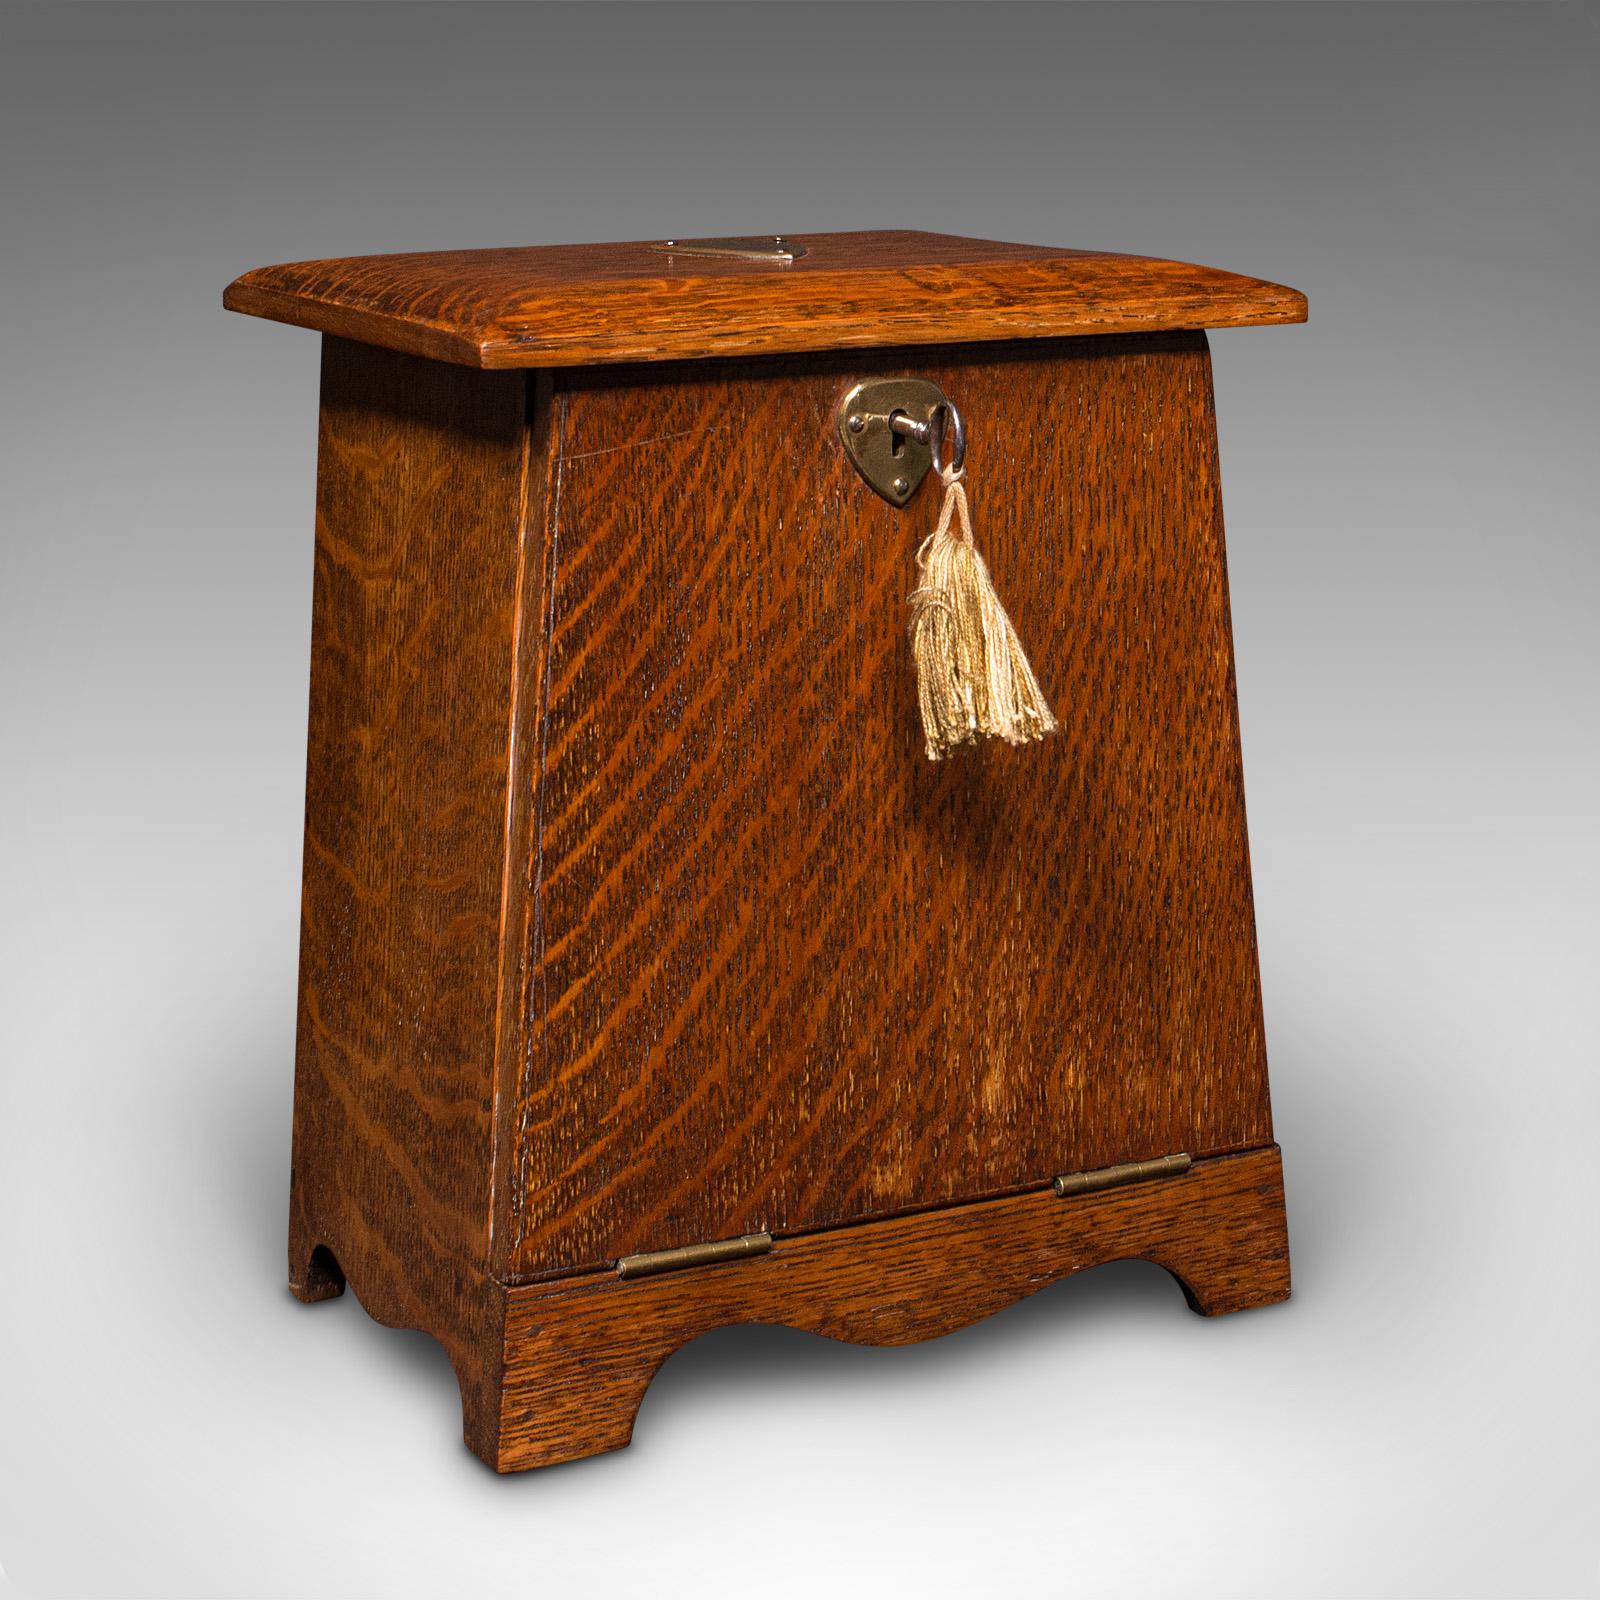 Dies ist eine antike Schreibtisch-Schreibwarenbox. Ein englischer Korrespondenzkoffer aus Eiche im Arts & Crafts-Stil aus der späten viktorianischen Periode, ca. 1890.

Auffallende viktorianische Handwerkskunst mit reizvoller Maserung
Zeigt eine